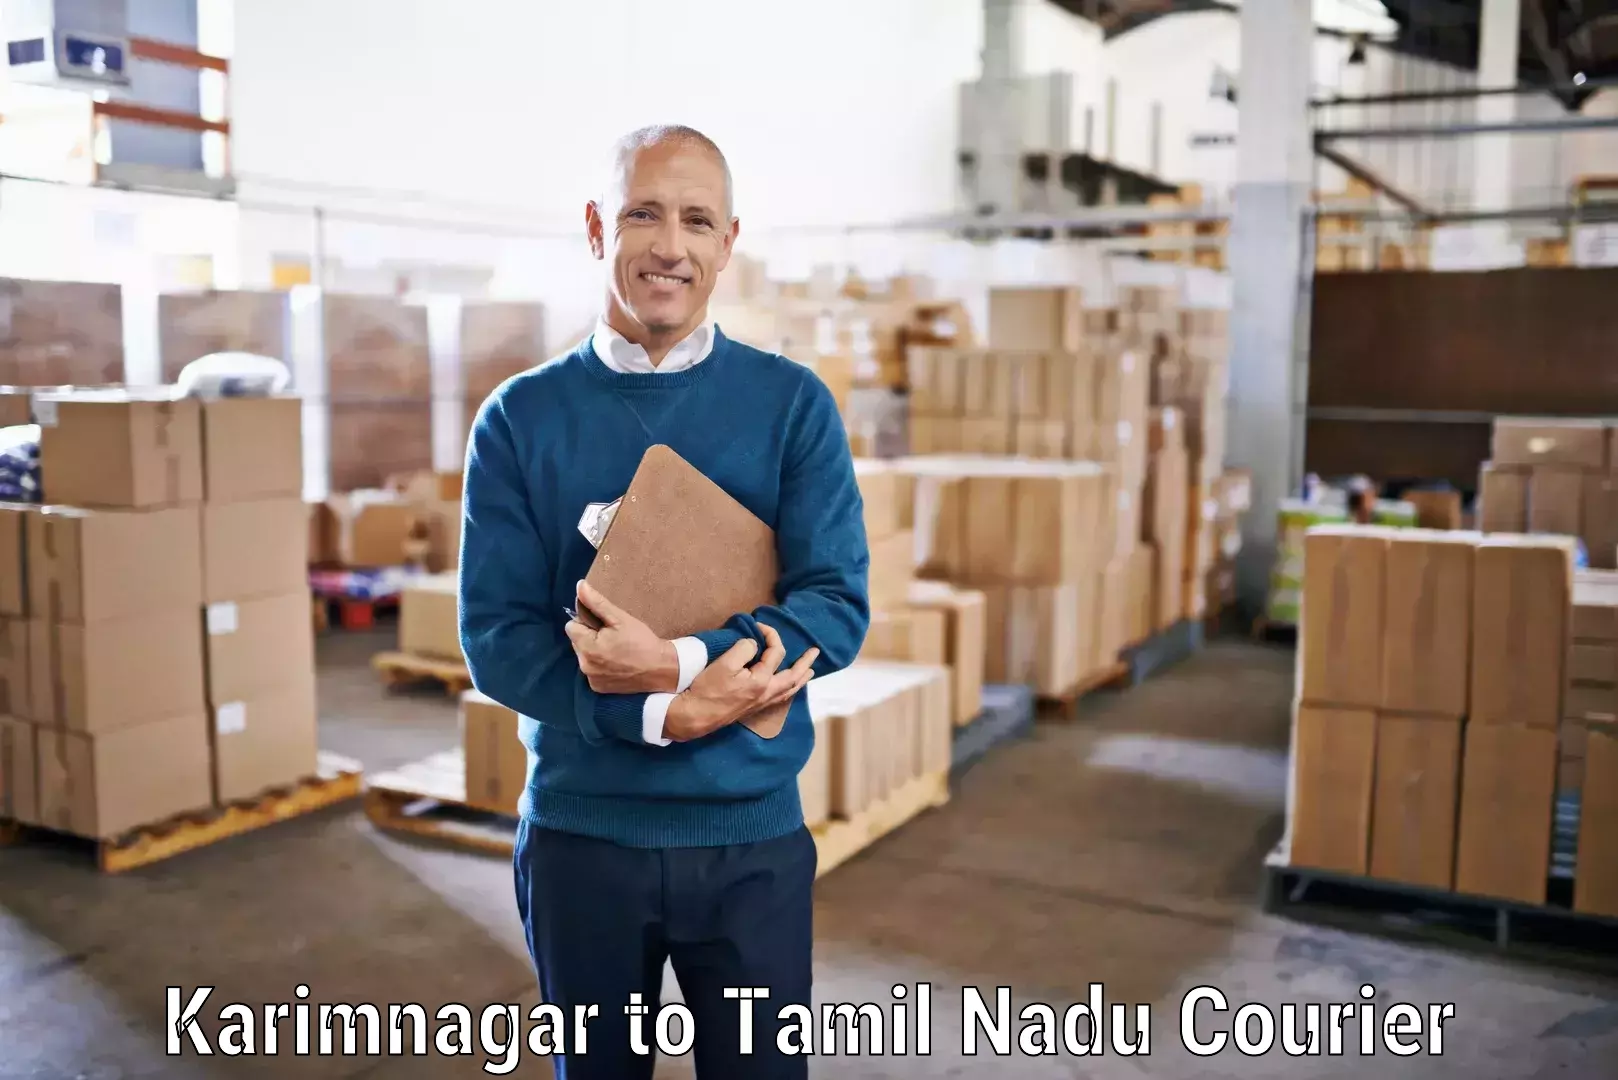 Speedy delivery service Karimnagar to Tiruchirappalli